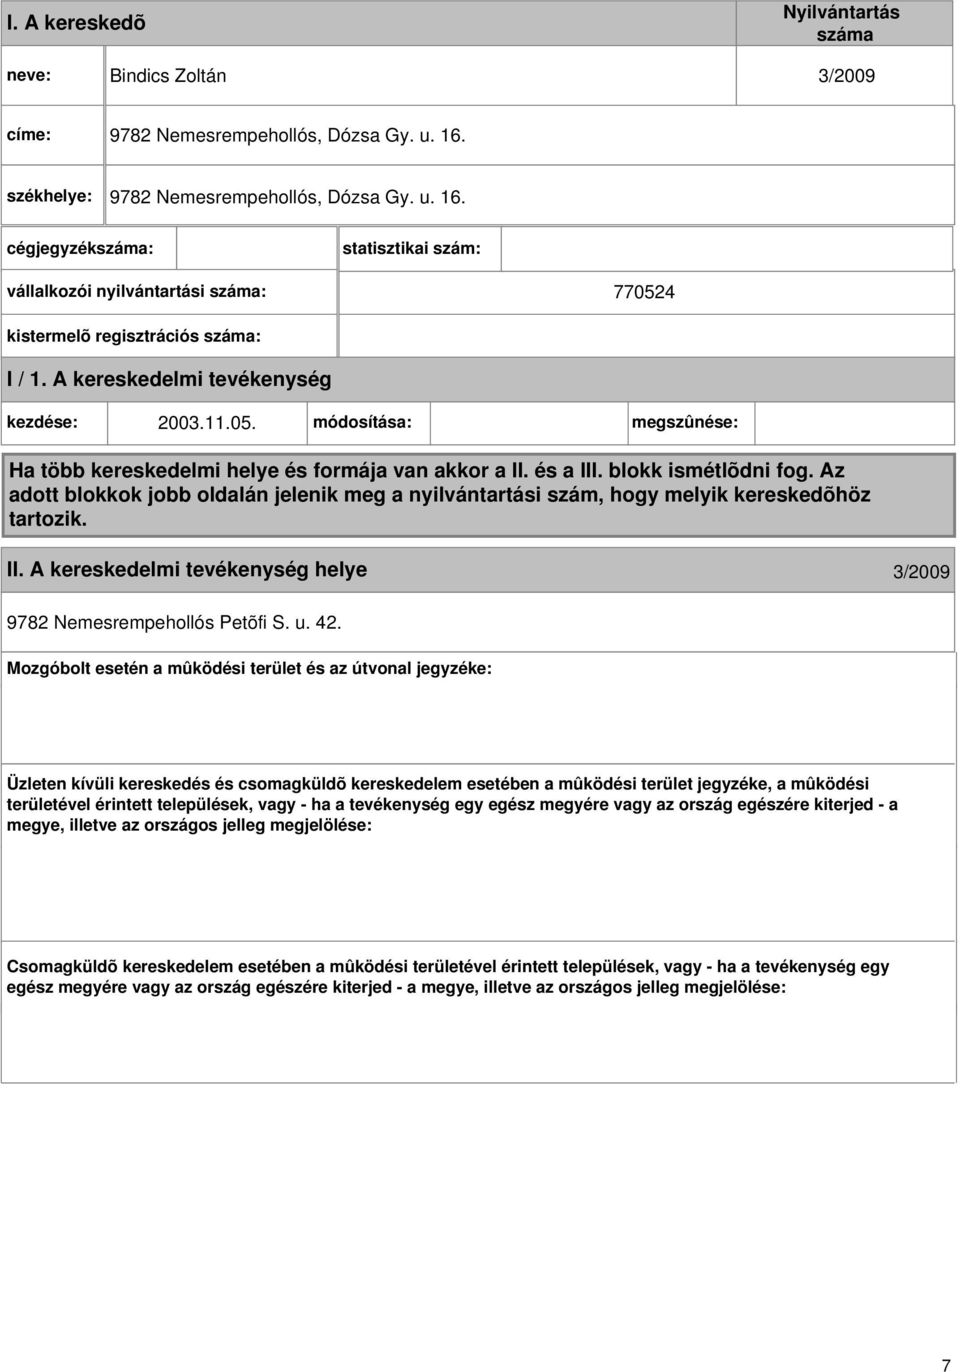 4 kistermelõ regisztrációs száma: I / 1. A kereskedelmi kezdése: 2003.11.05. módosítása: megszûnése: Ha több kereskedelmi helye és formája van akkor a II. és a III. blokk ismétlõdni fog.